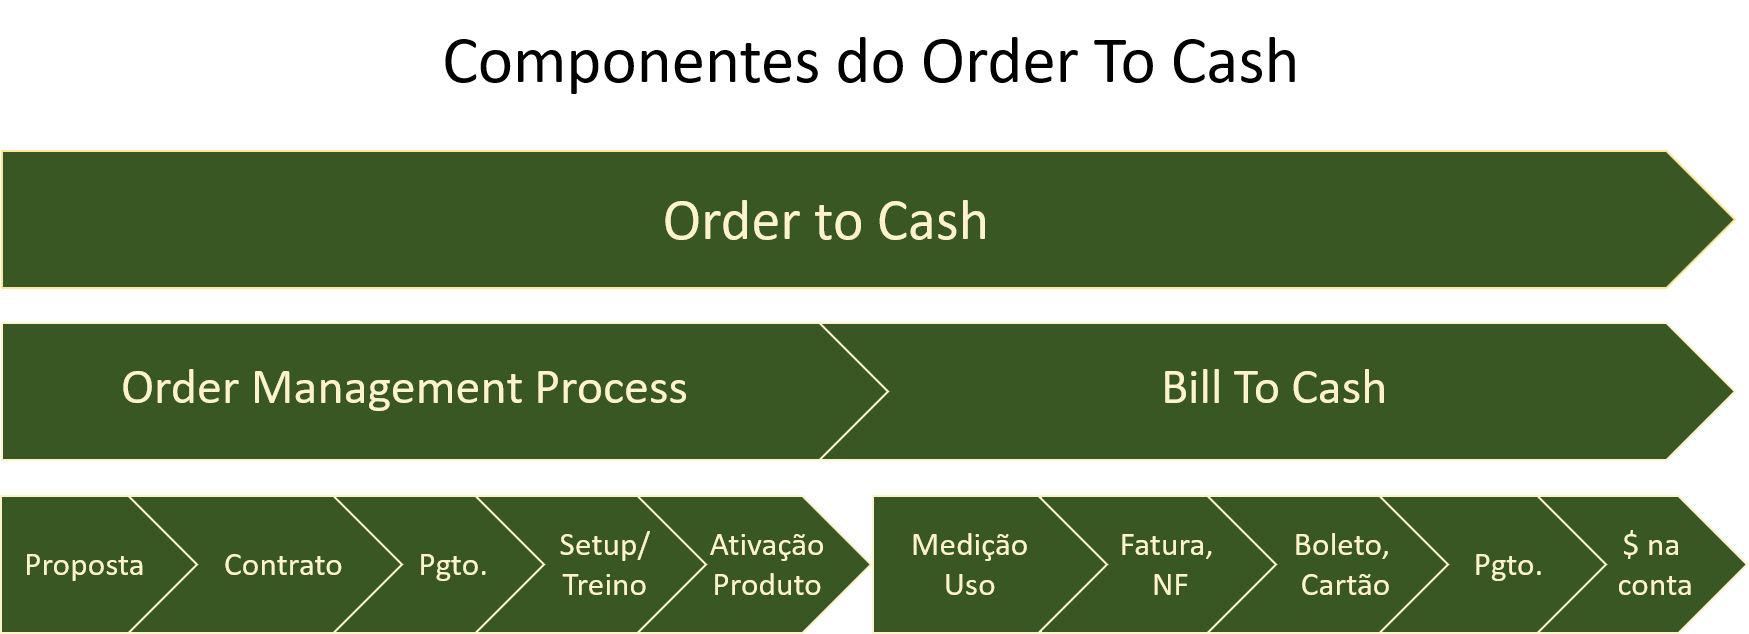 order to cash blockchain